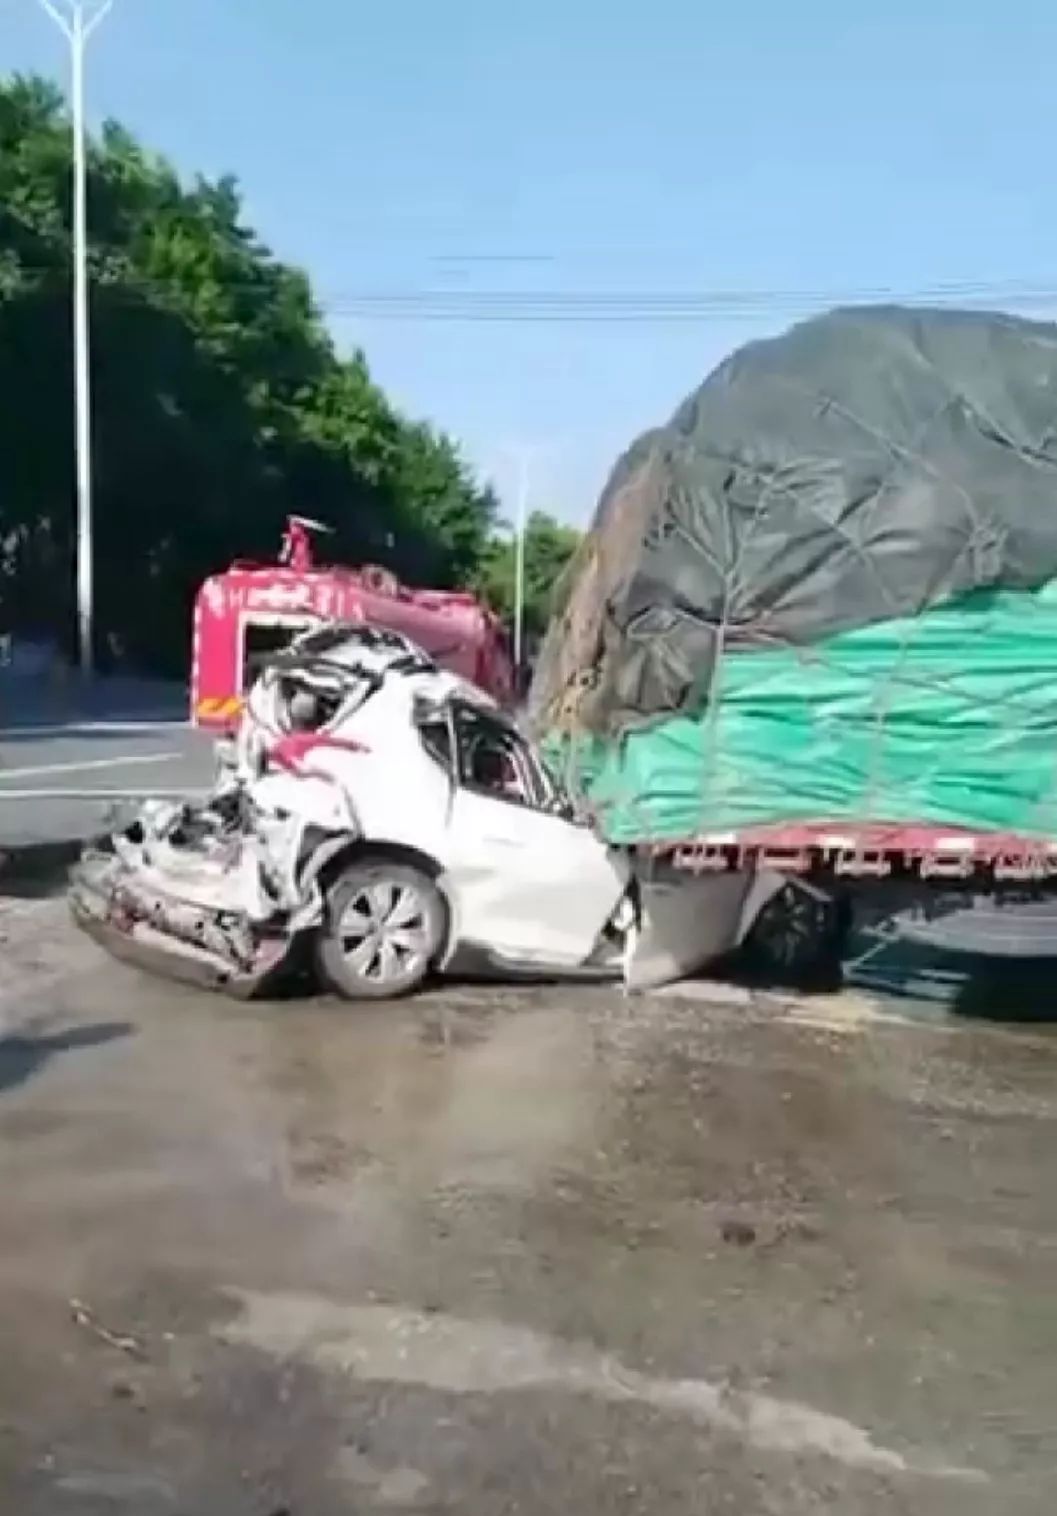 刚刚肇庆发生一场车祸图片